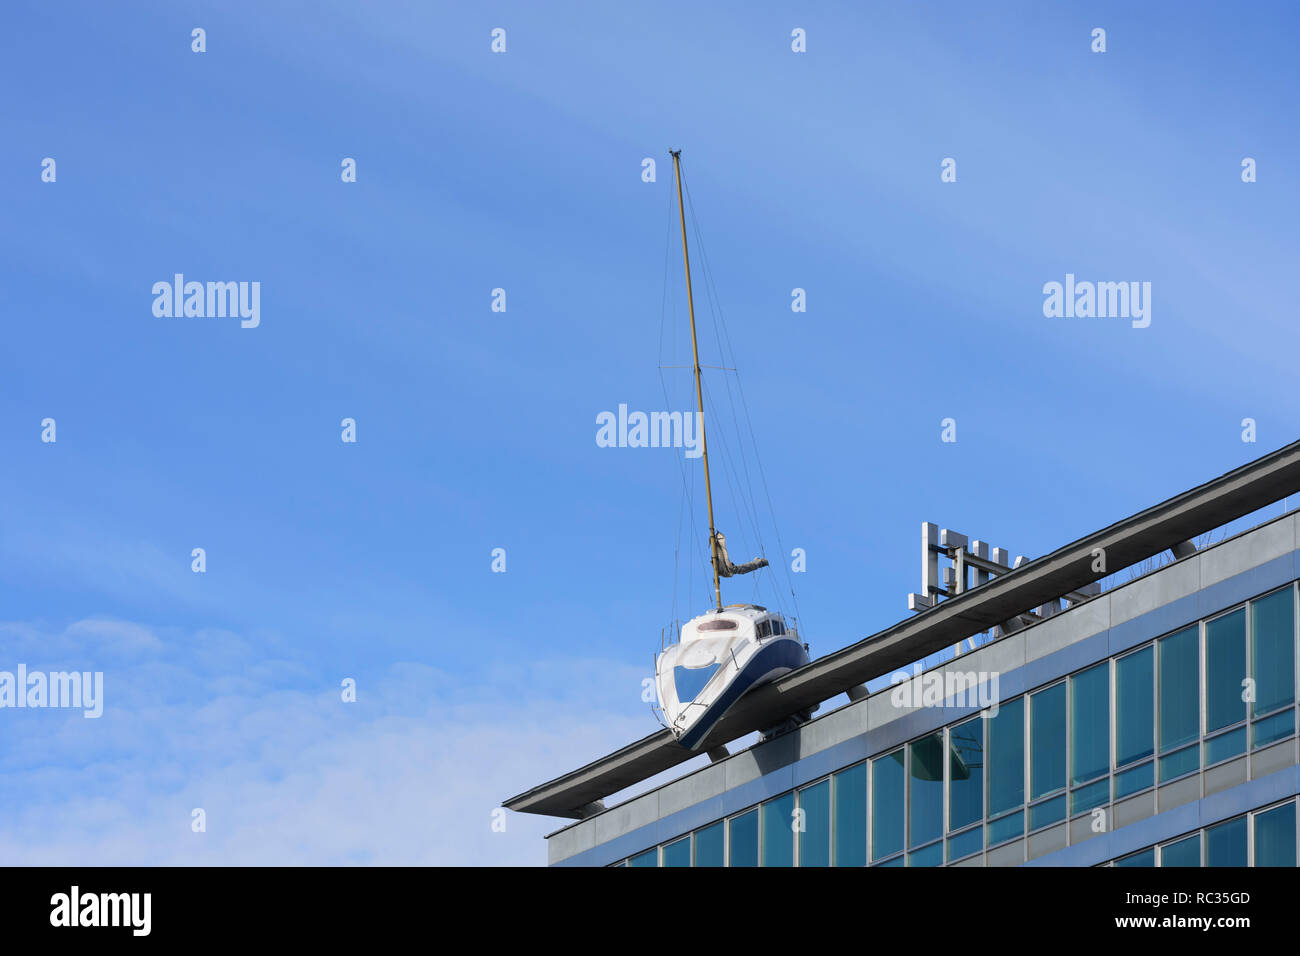 Wien, Vienne : Hotel Daniel avec bend voilier "Misconceivable" au toit, l'artiste Erwin Wurm dans 03. Landstraße, Wien, Autriche Banque D'Images